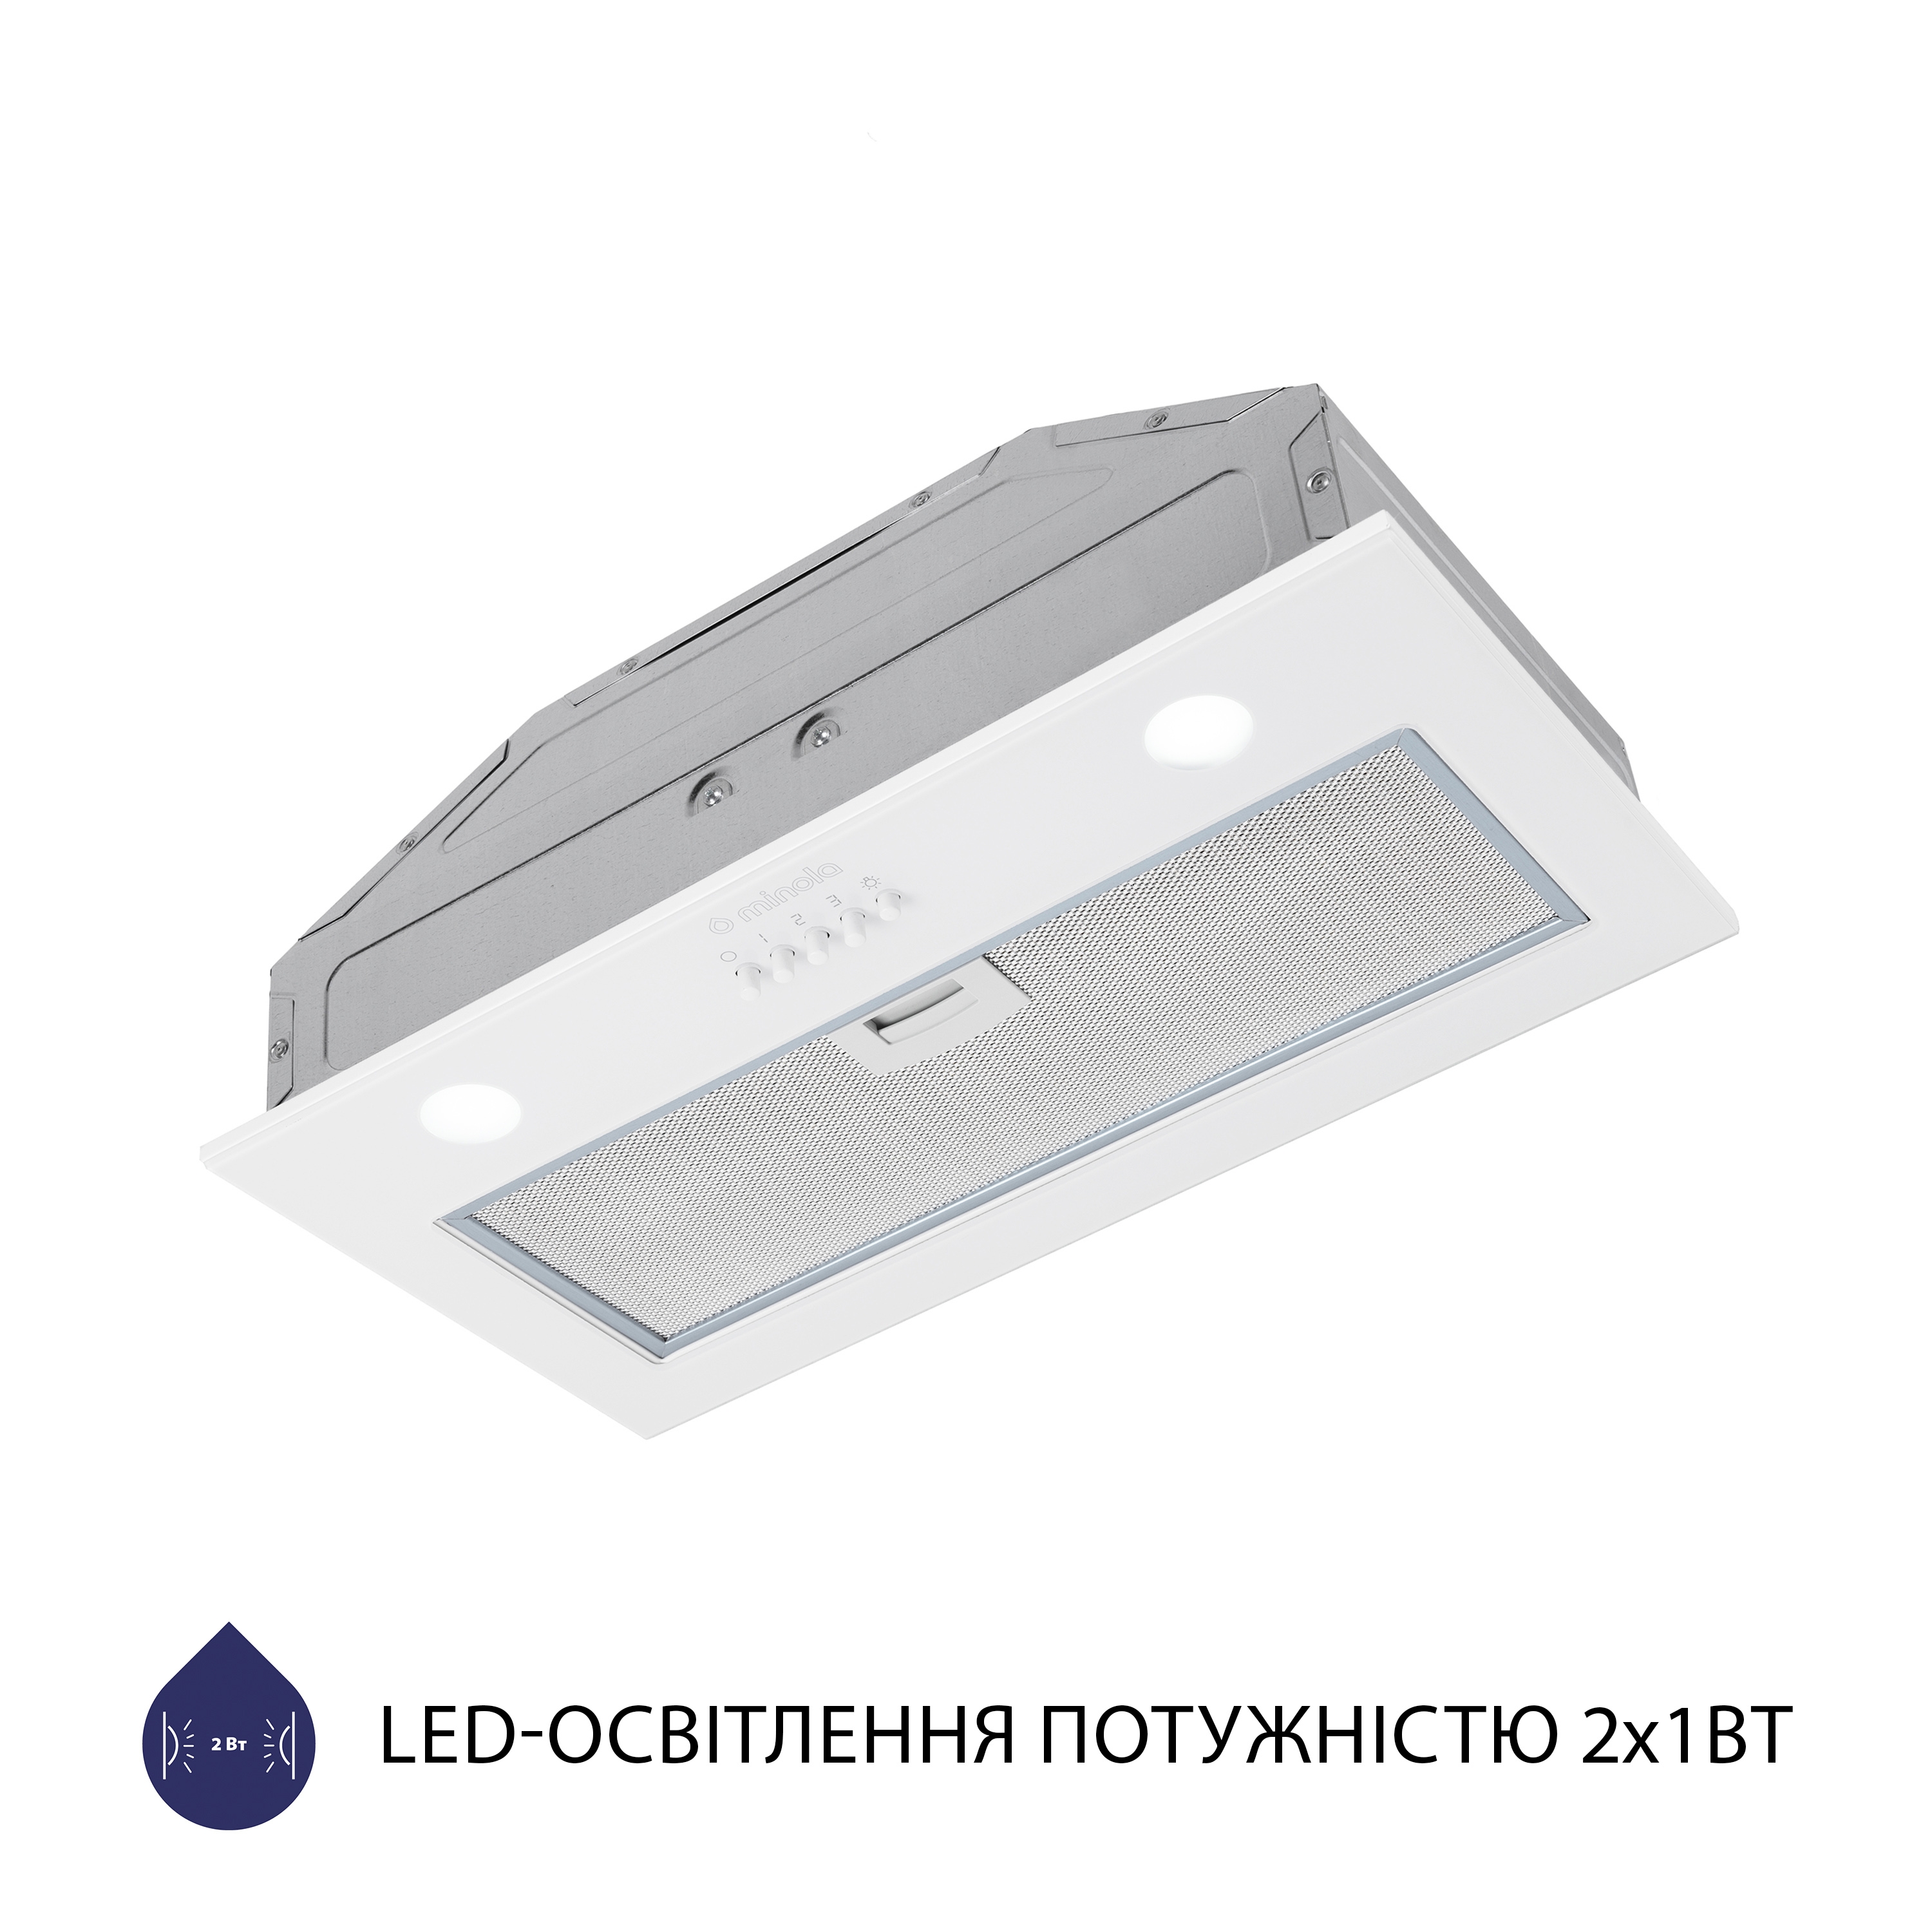 Витяжка кухонная полновстраиваемая Minola HBI 52621 WH GLASS 700 LED отзывы - изображения 5